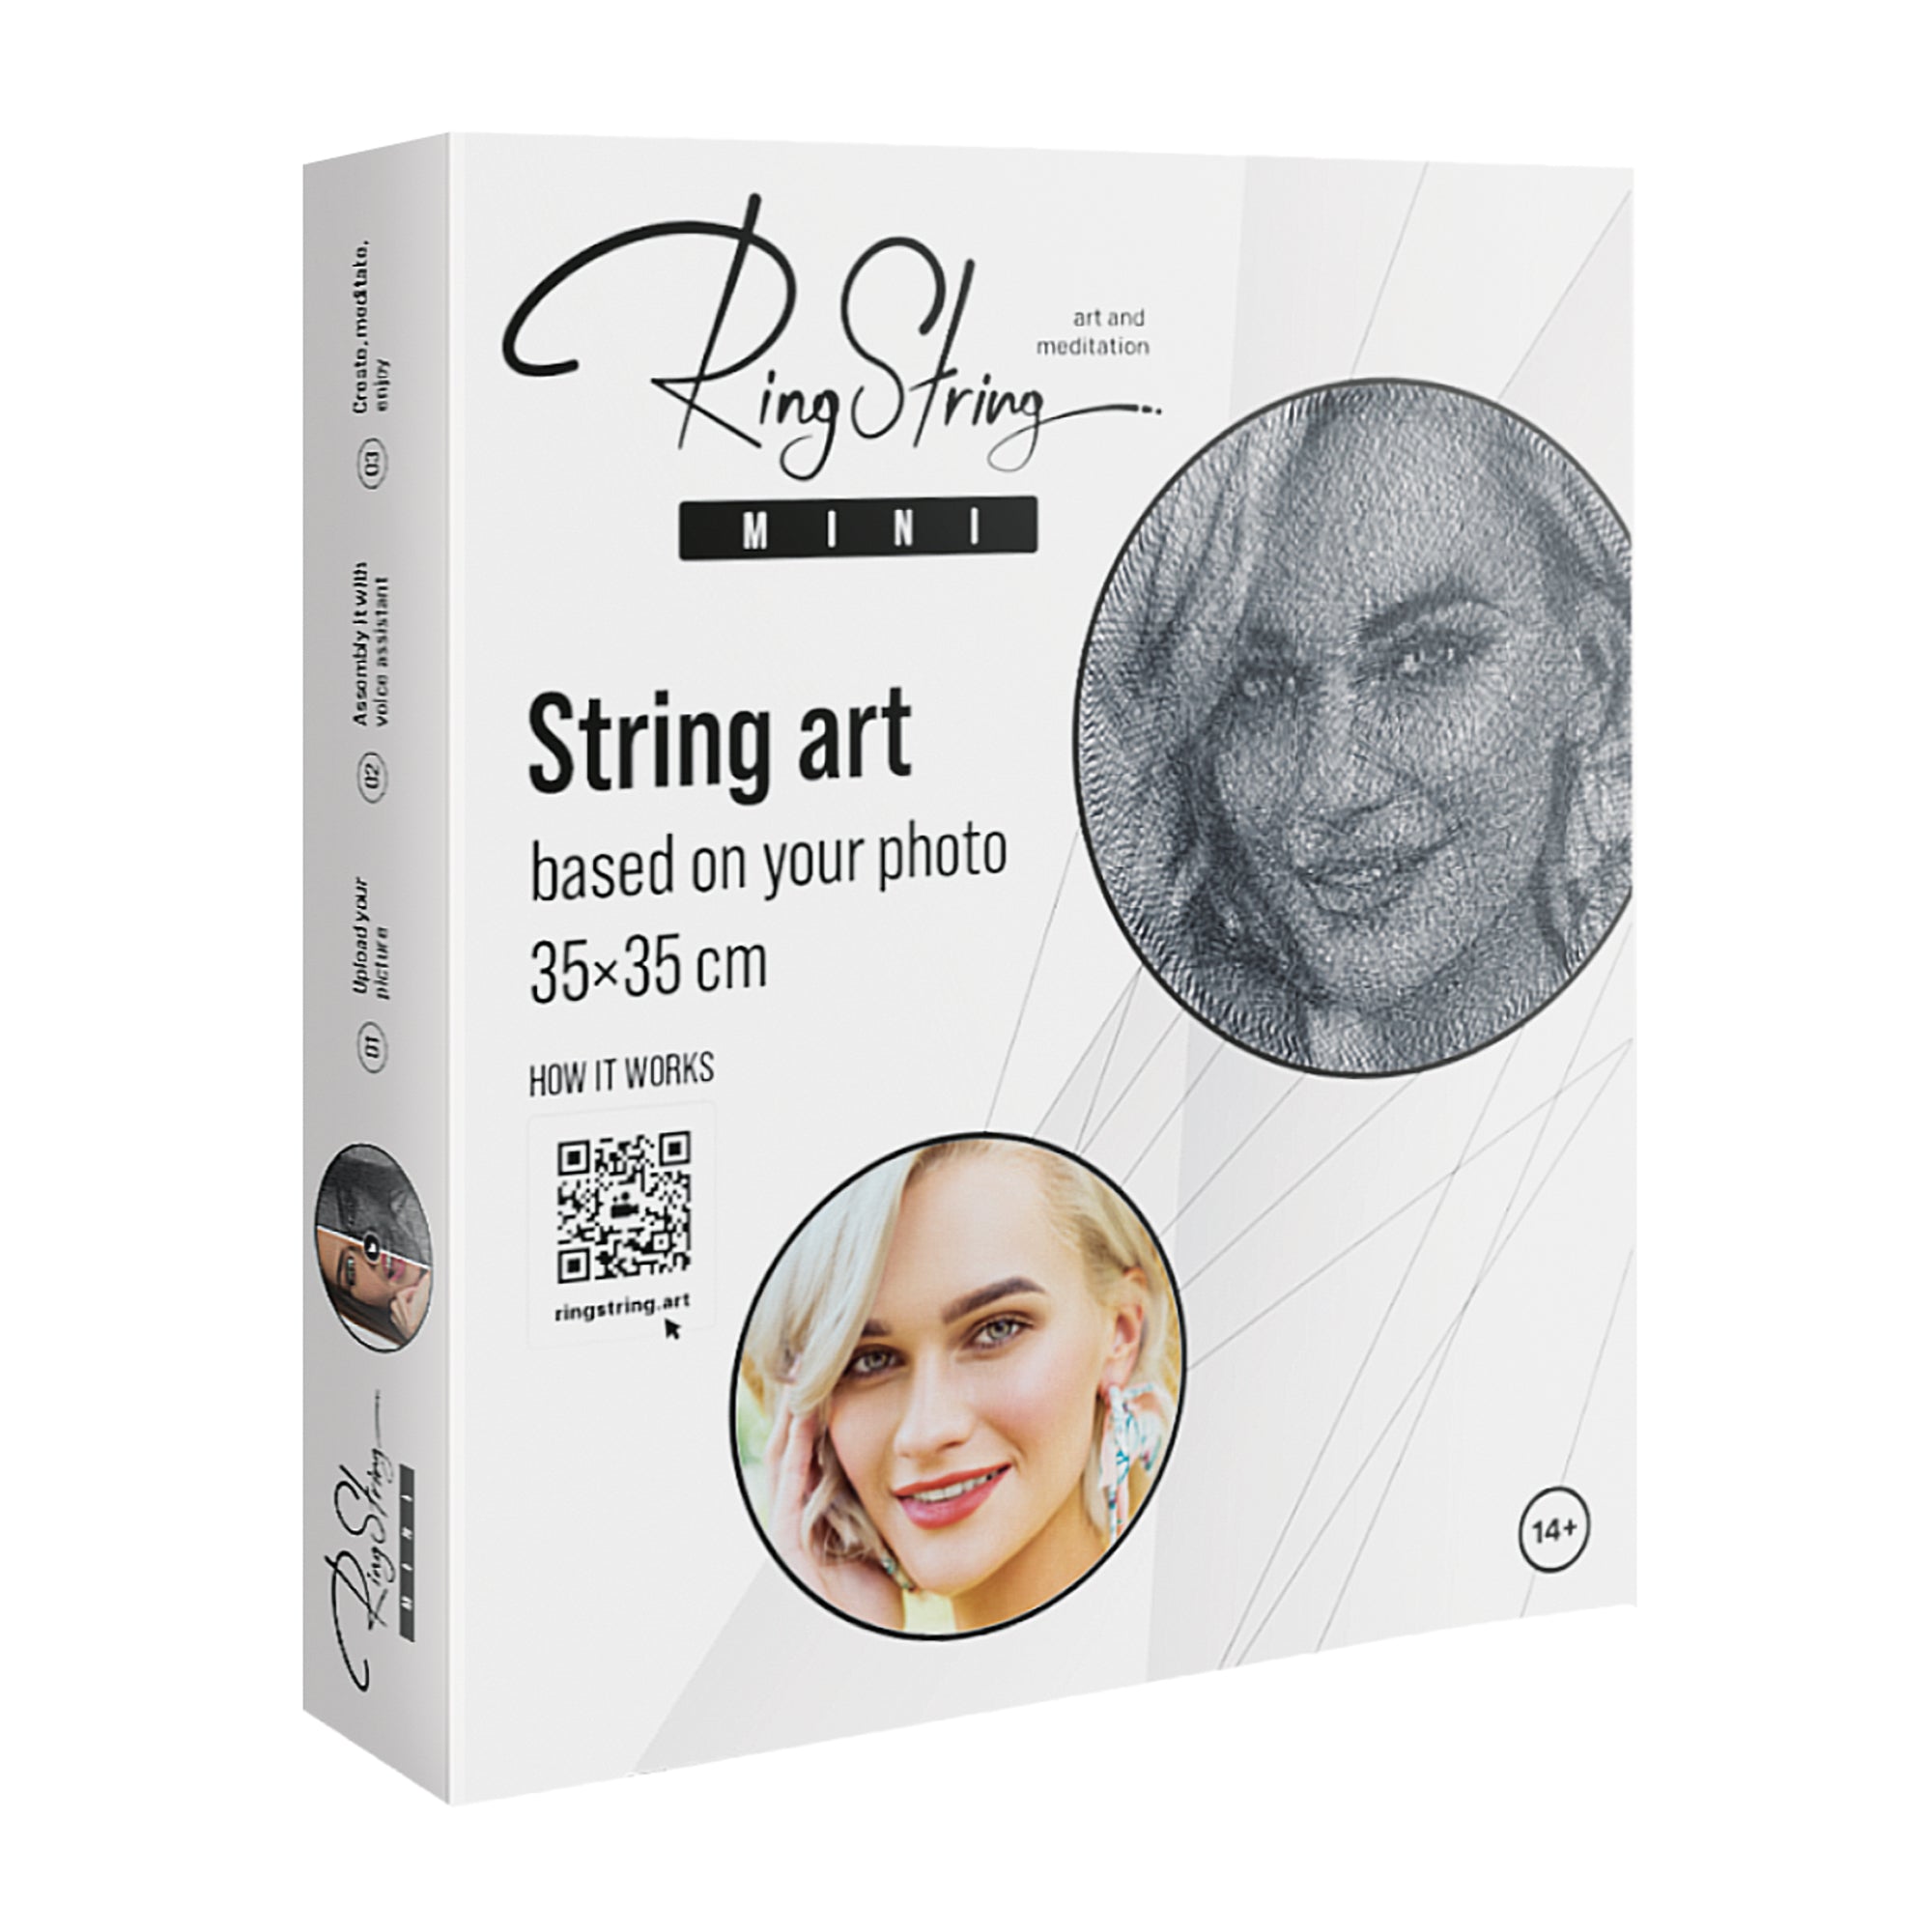 RingString Mini string art diy kit - StringArt.lv